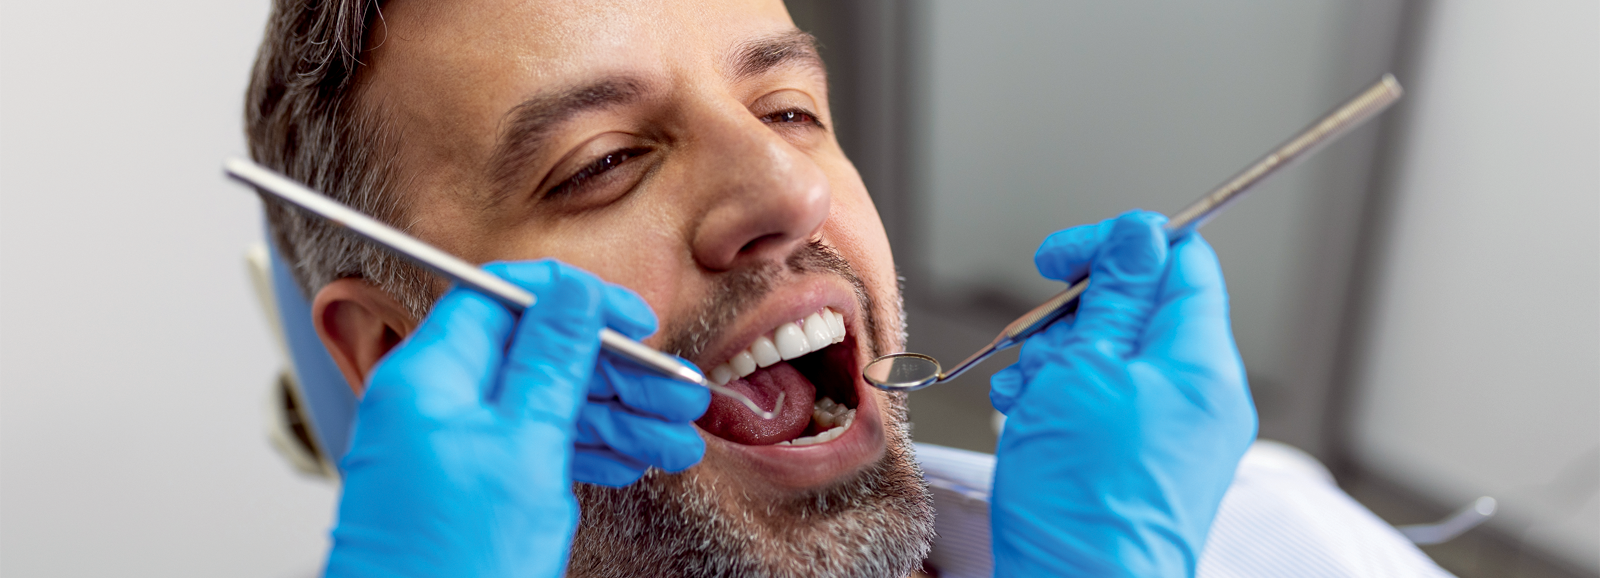 man-at-the-dentist-1600x578.png